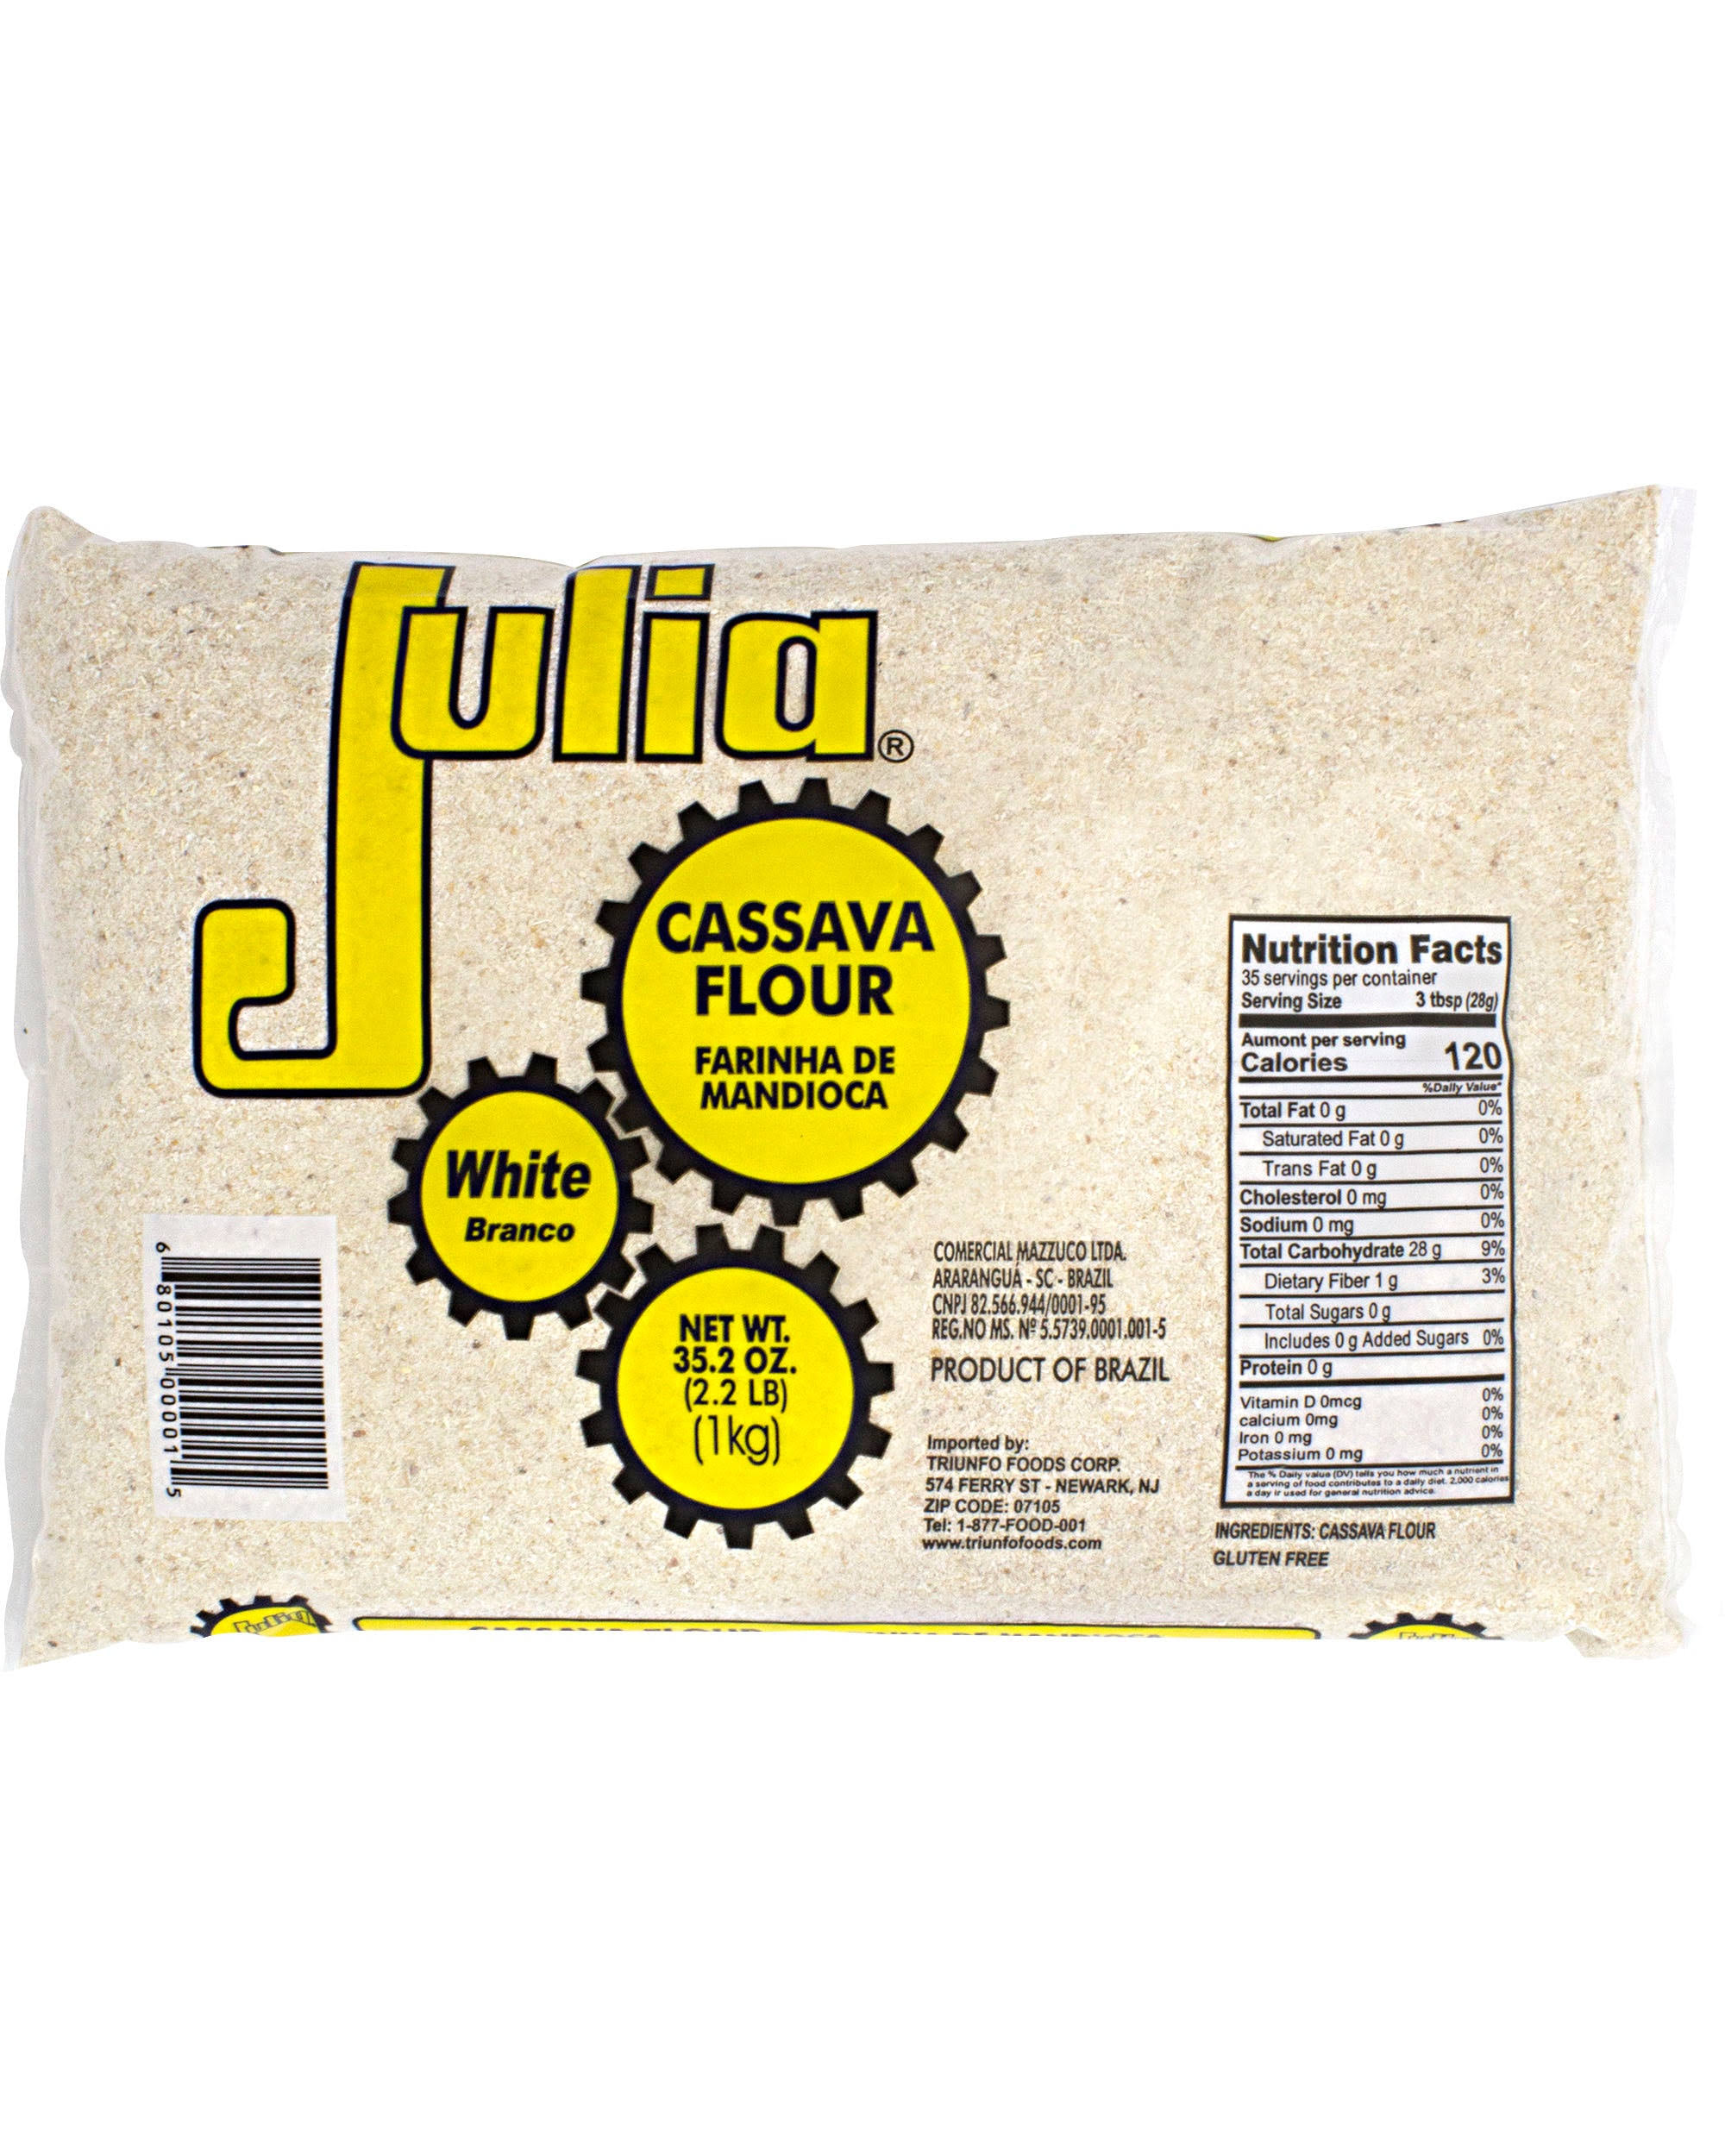 Julia Cassava White Flour - 35.2oz